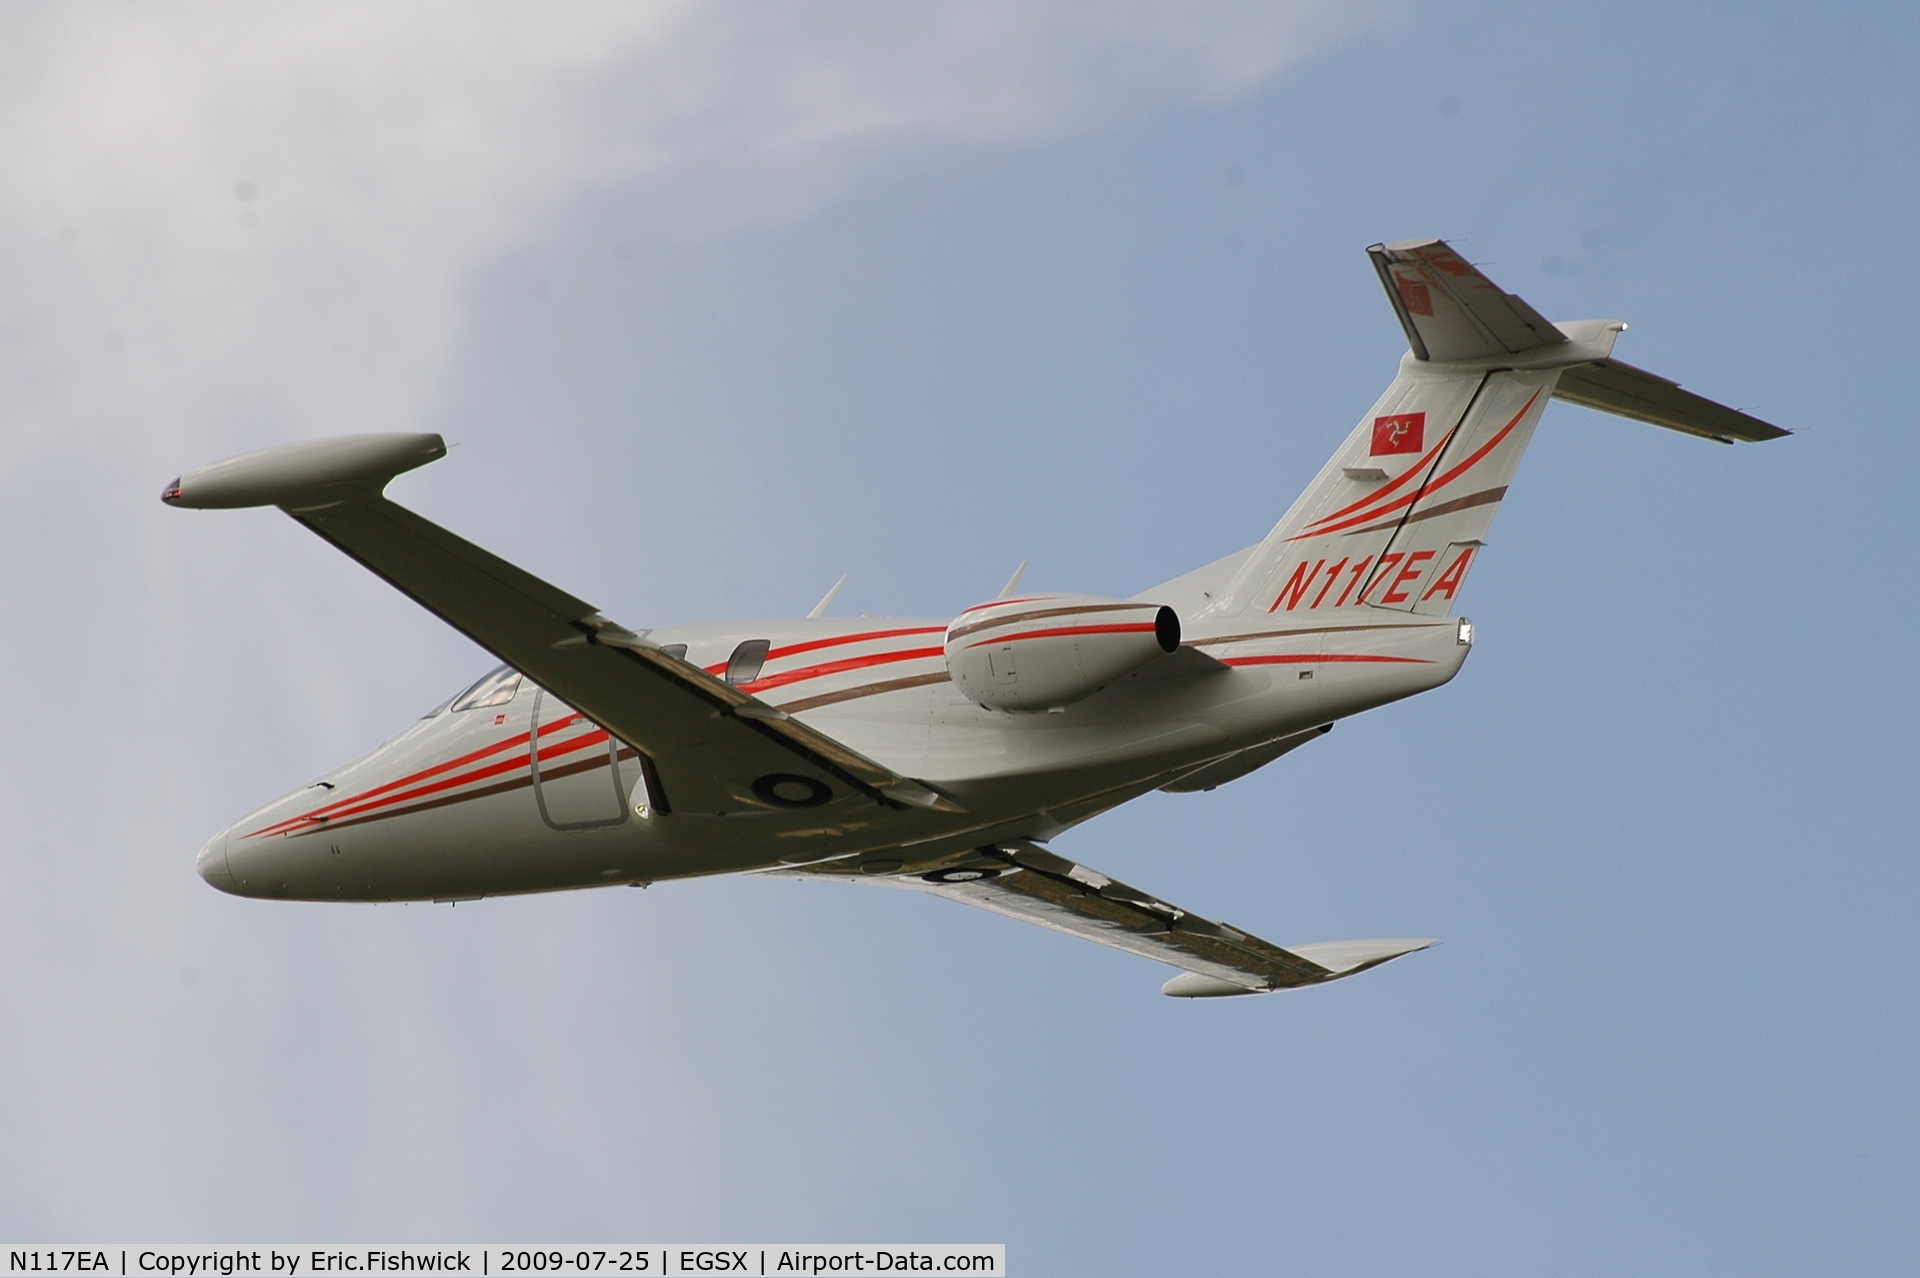 N117EA, 2007 Eclipse Aviation Corp EA500 C/N 000104, N117EA departing North Weald Airfield